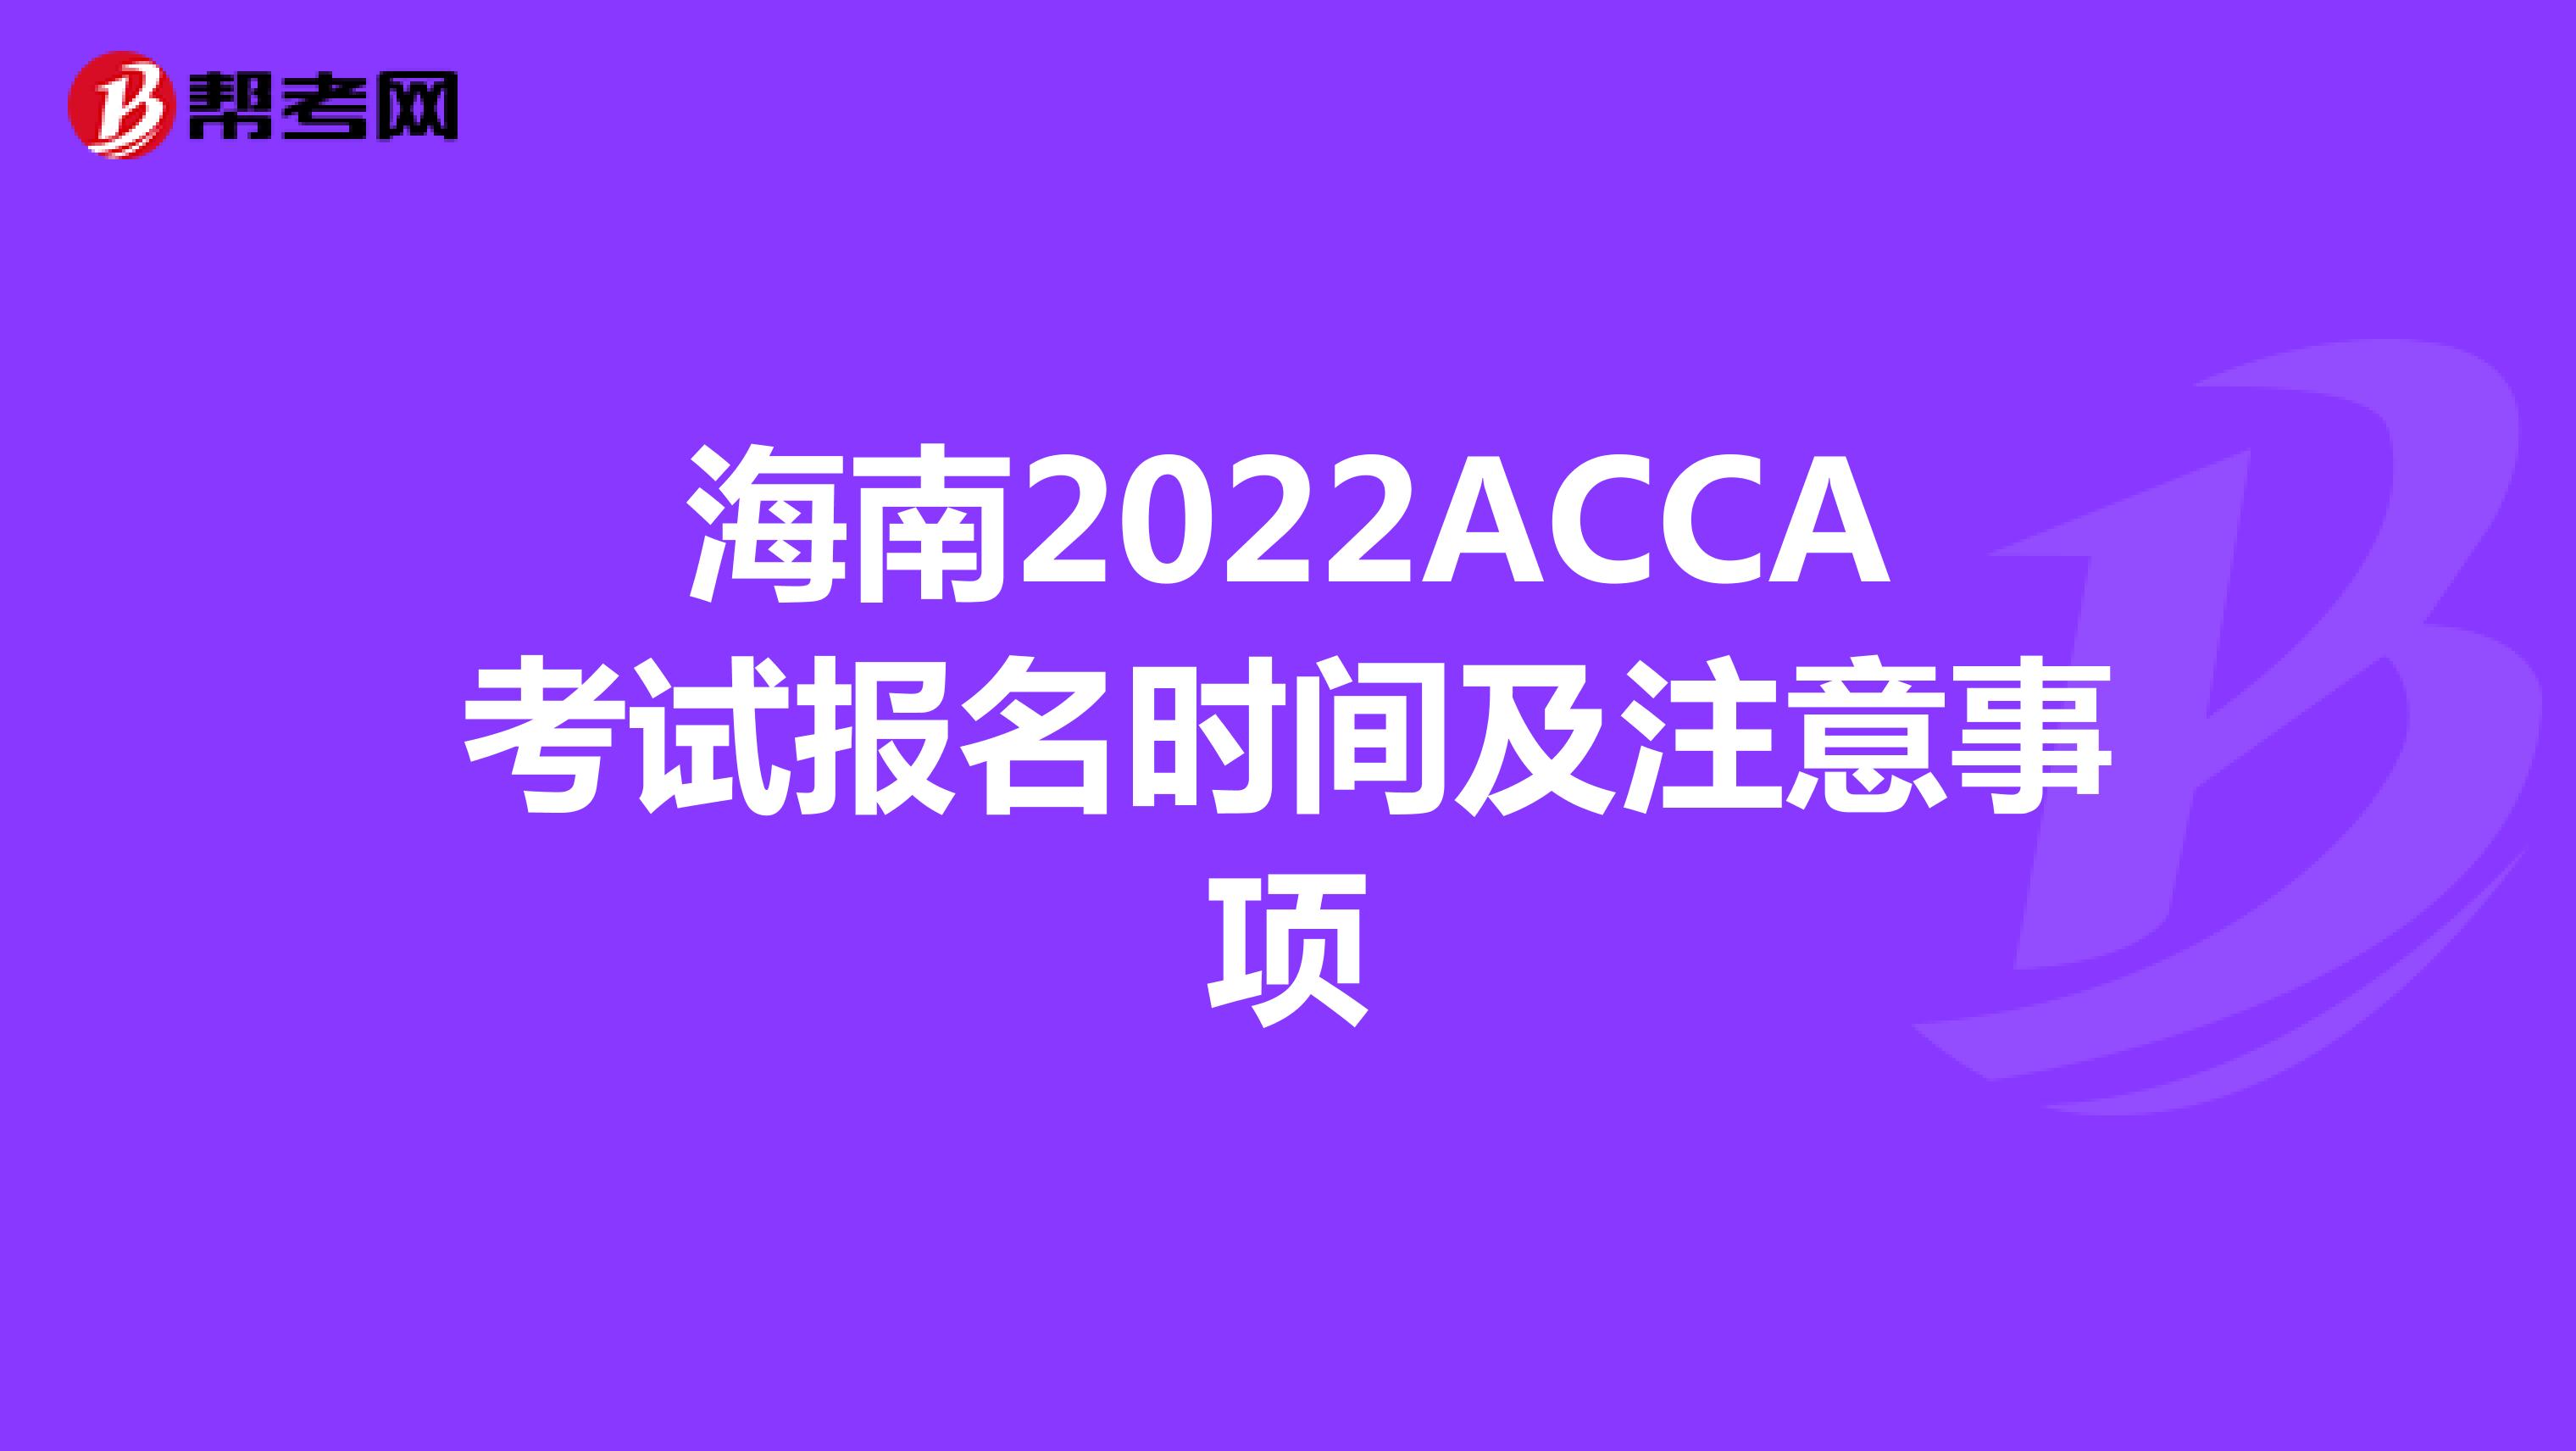 海南2022ACCA考试报名时间及注意事项